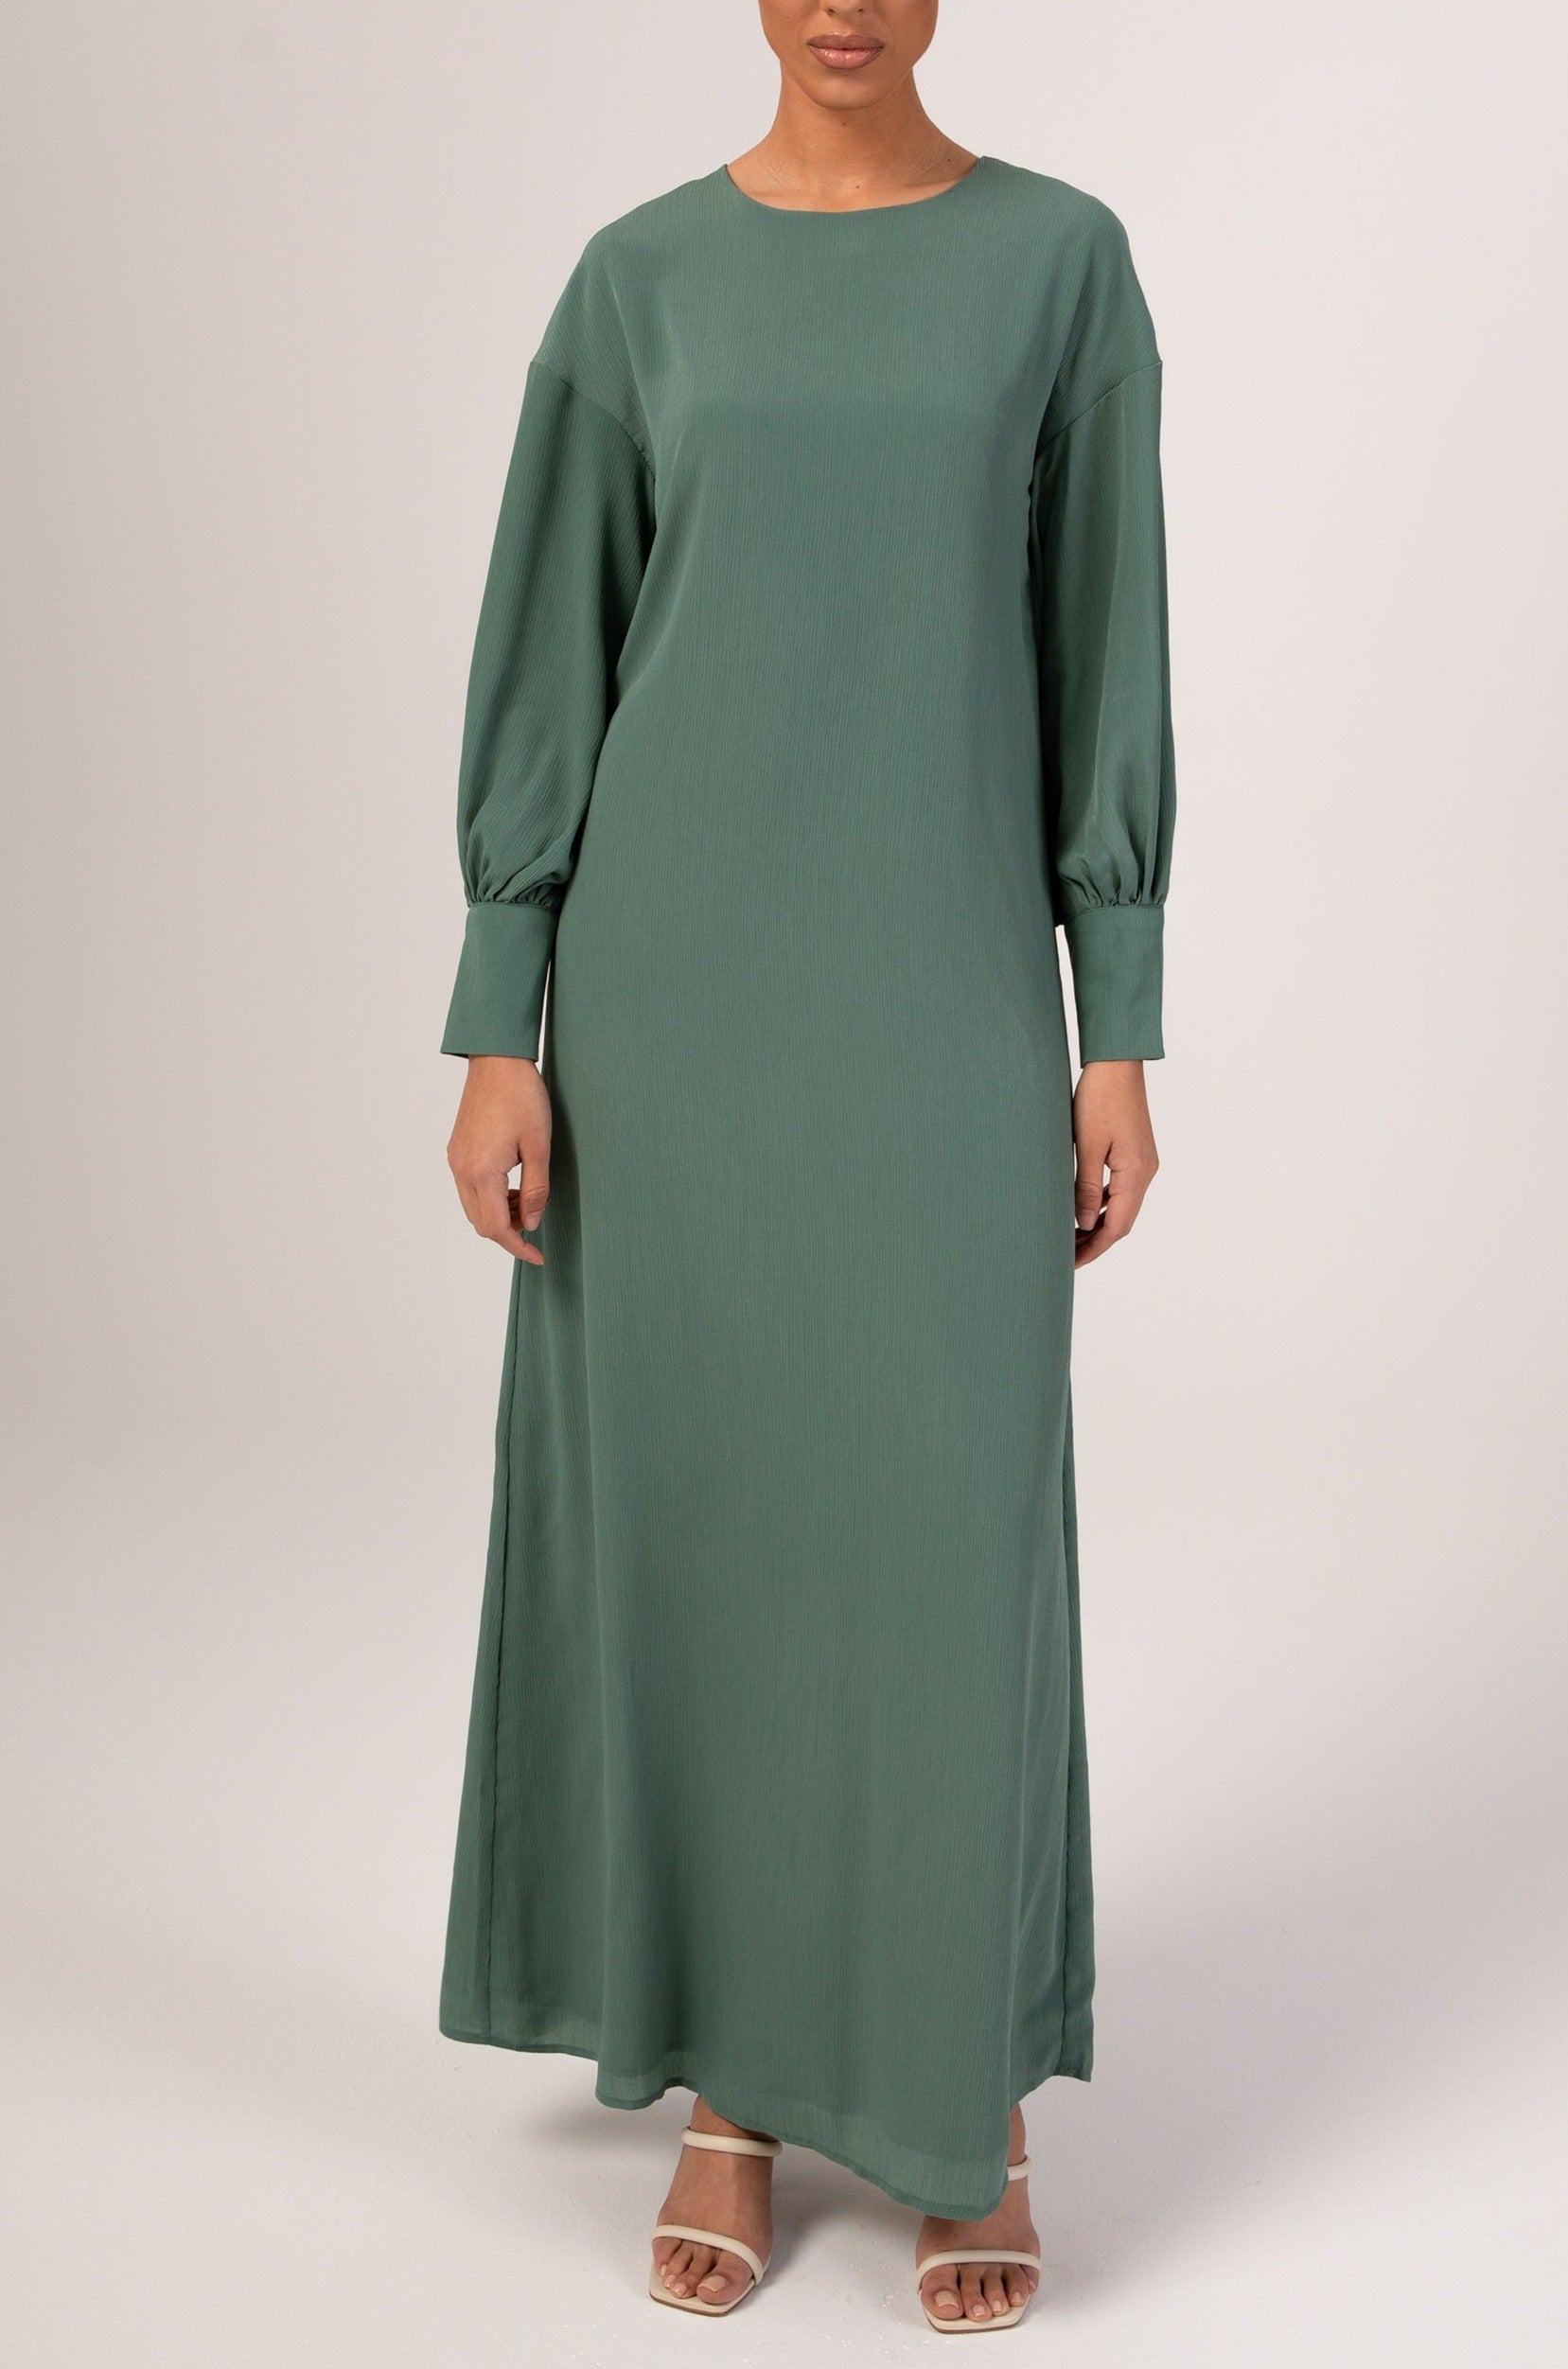 Madina Textured Maxi Dress - Sage Veiled 